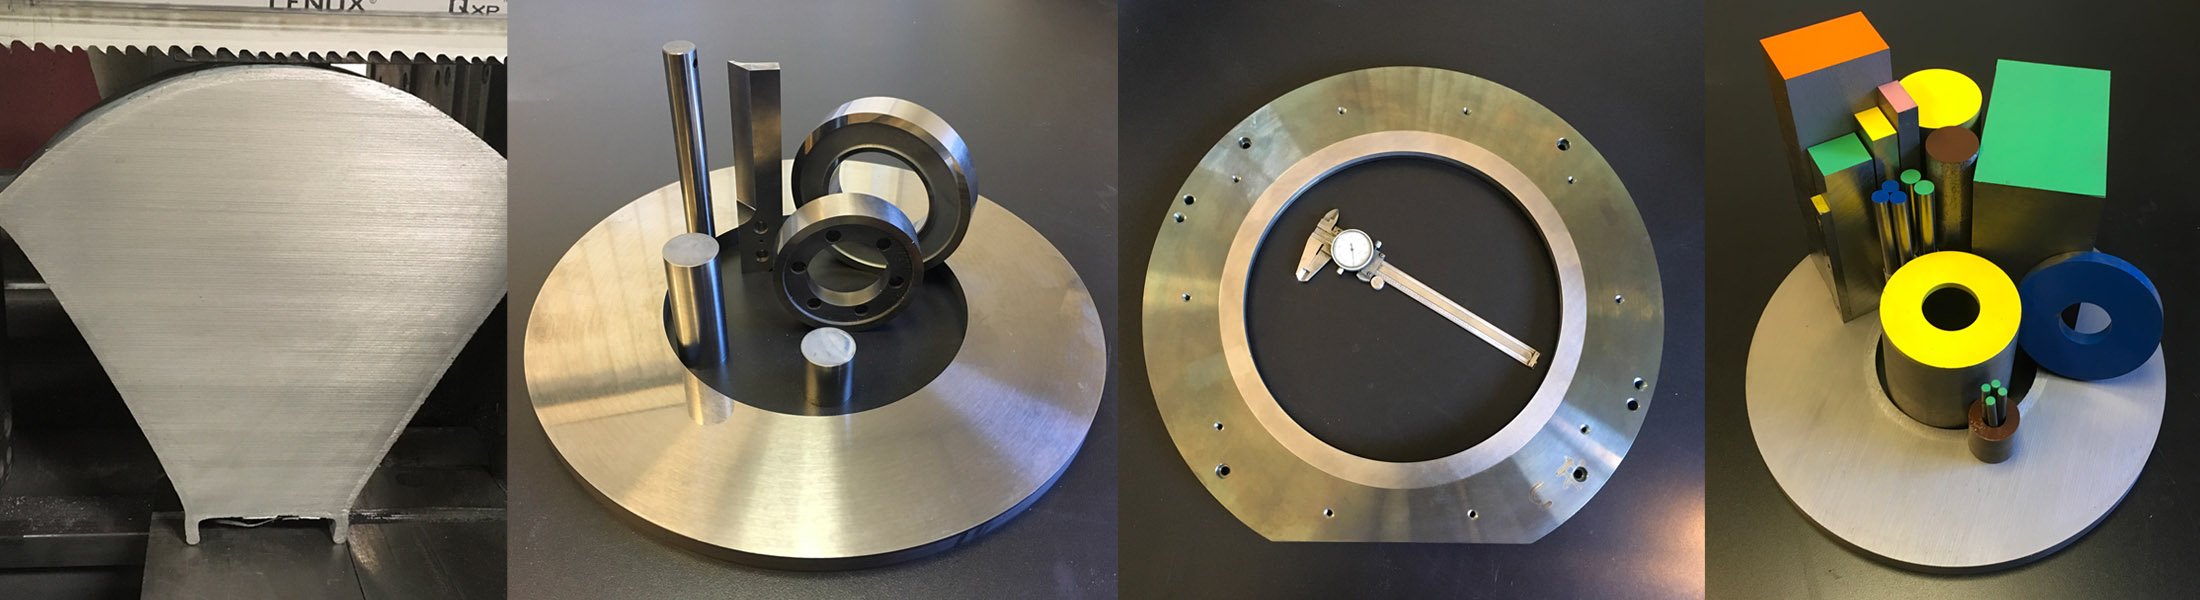 ferro-tic custom titanium parts and components